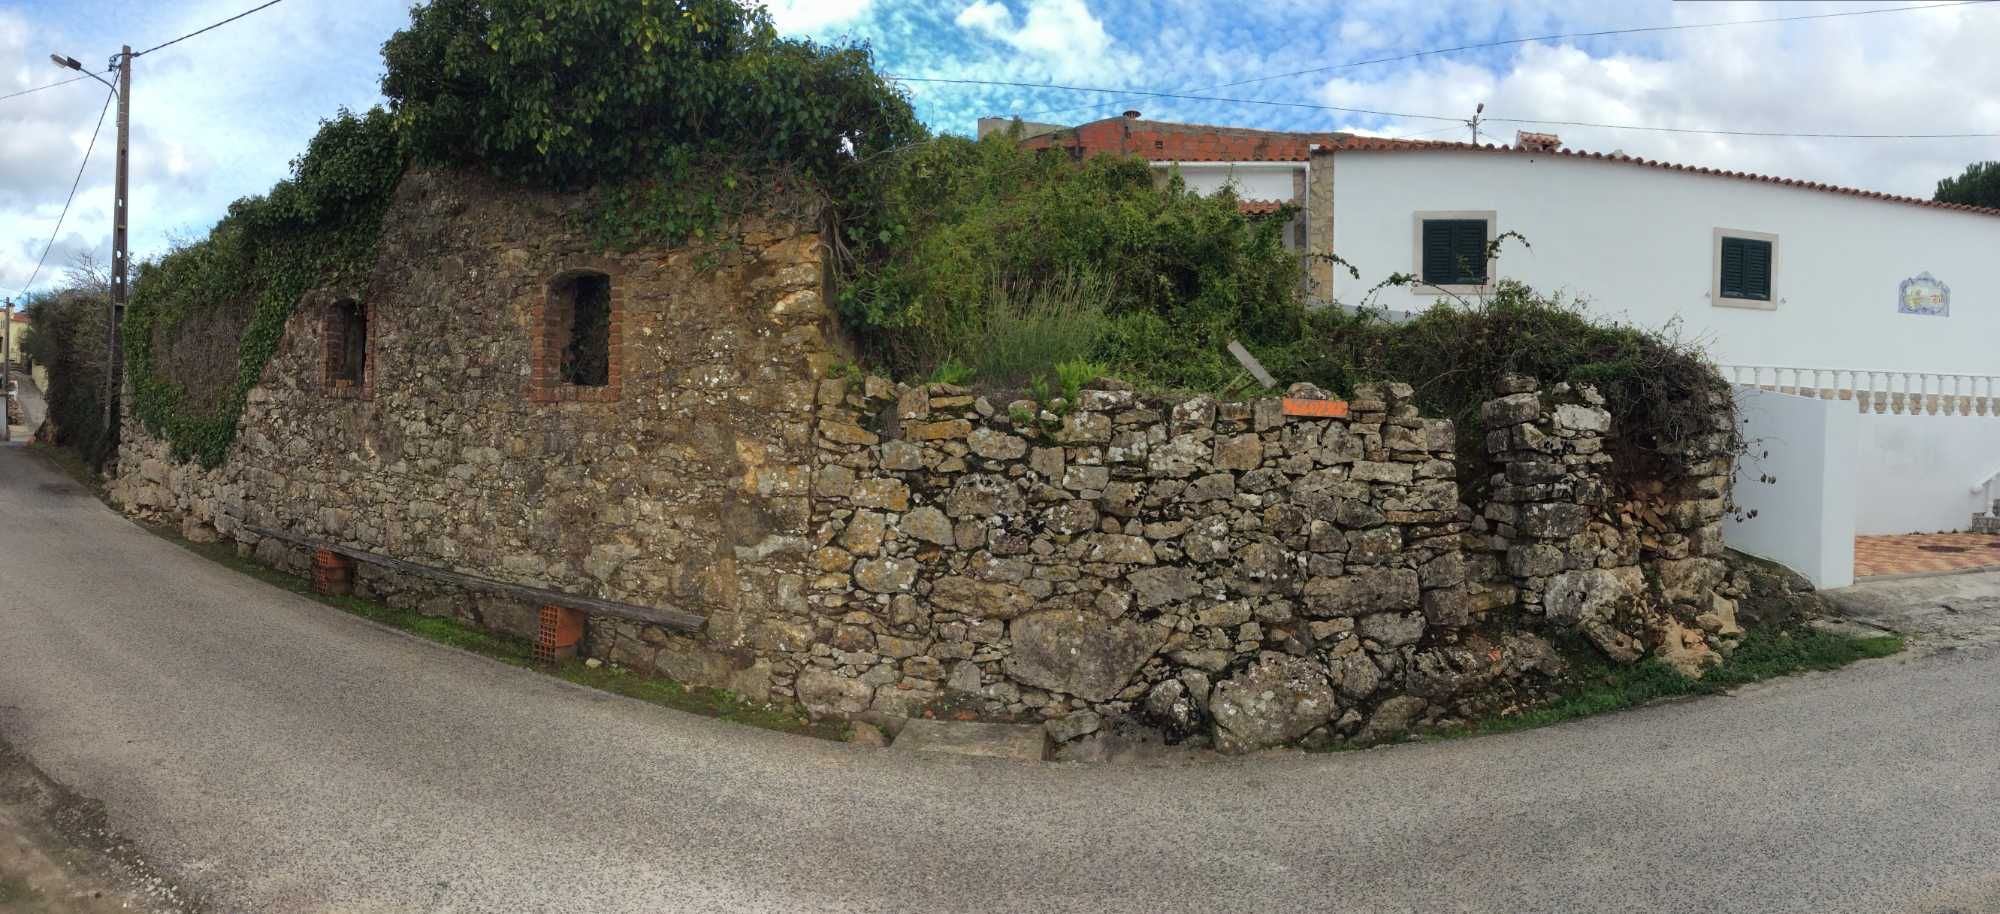 Vendo casa em ruina com muito bom terreno perto de Lisboa